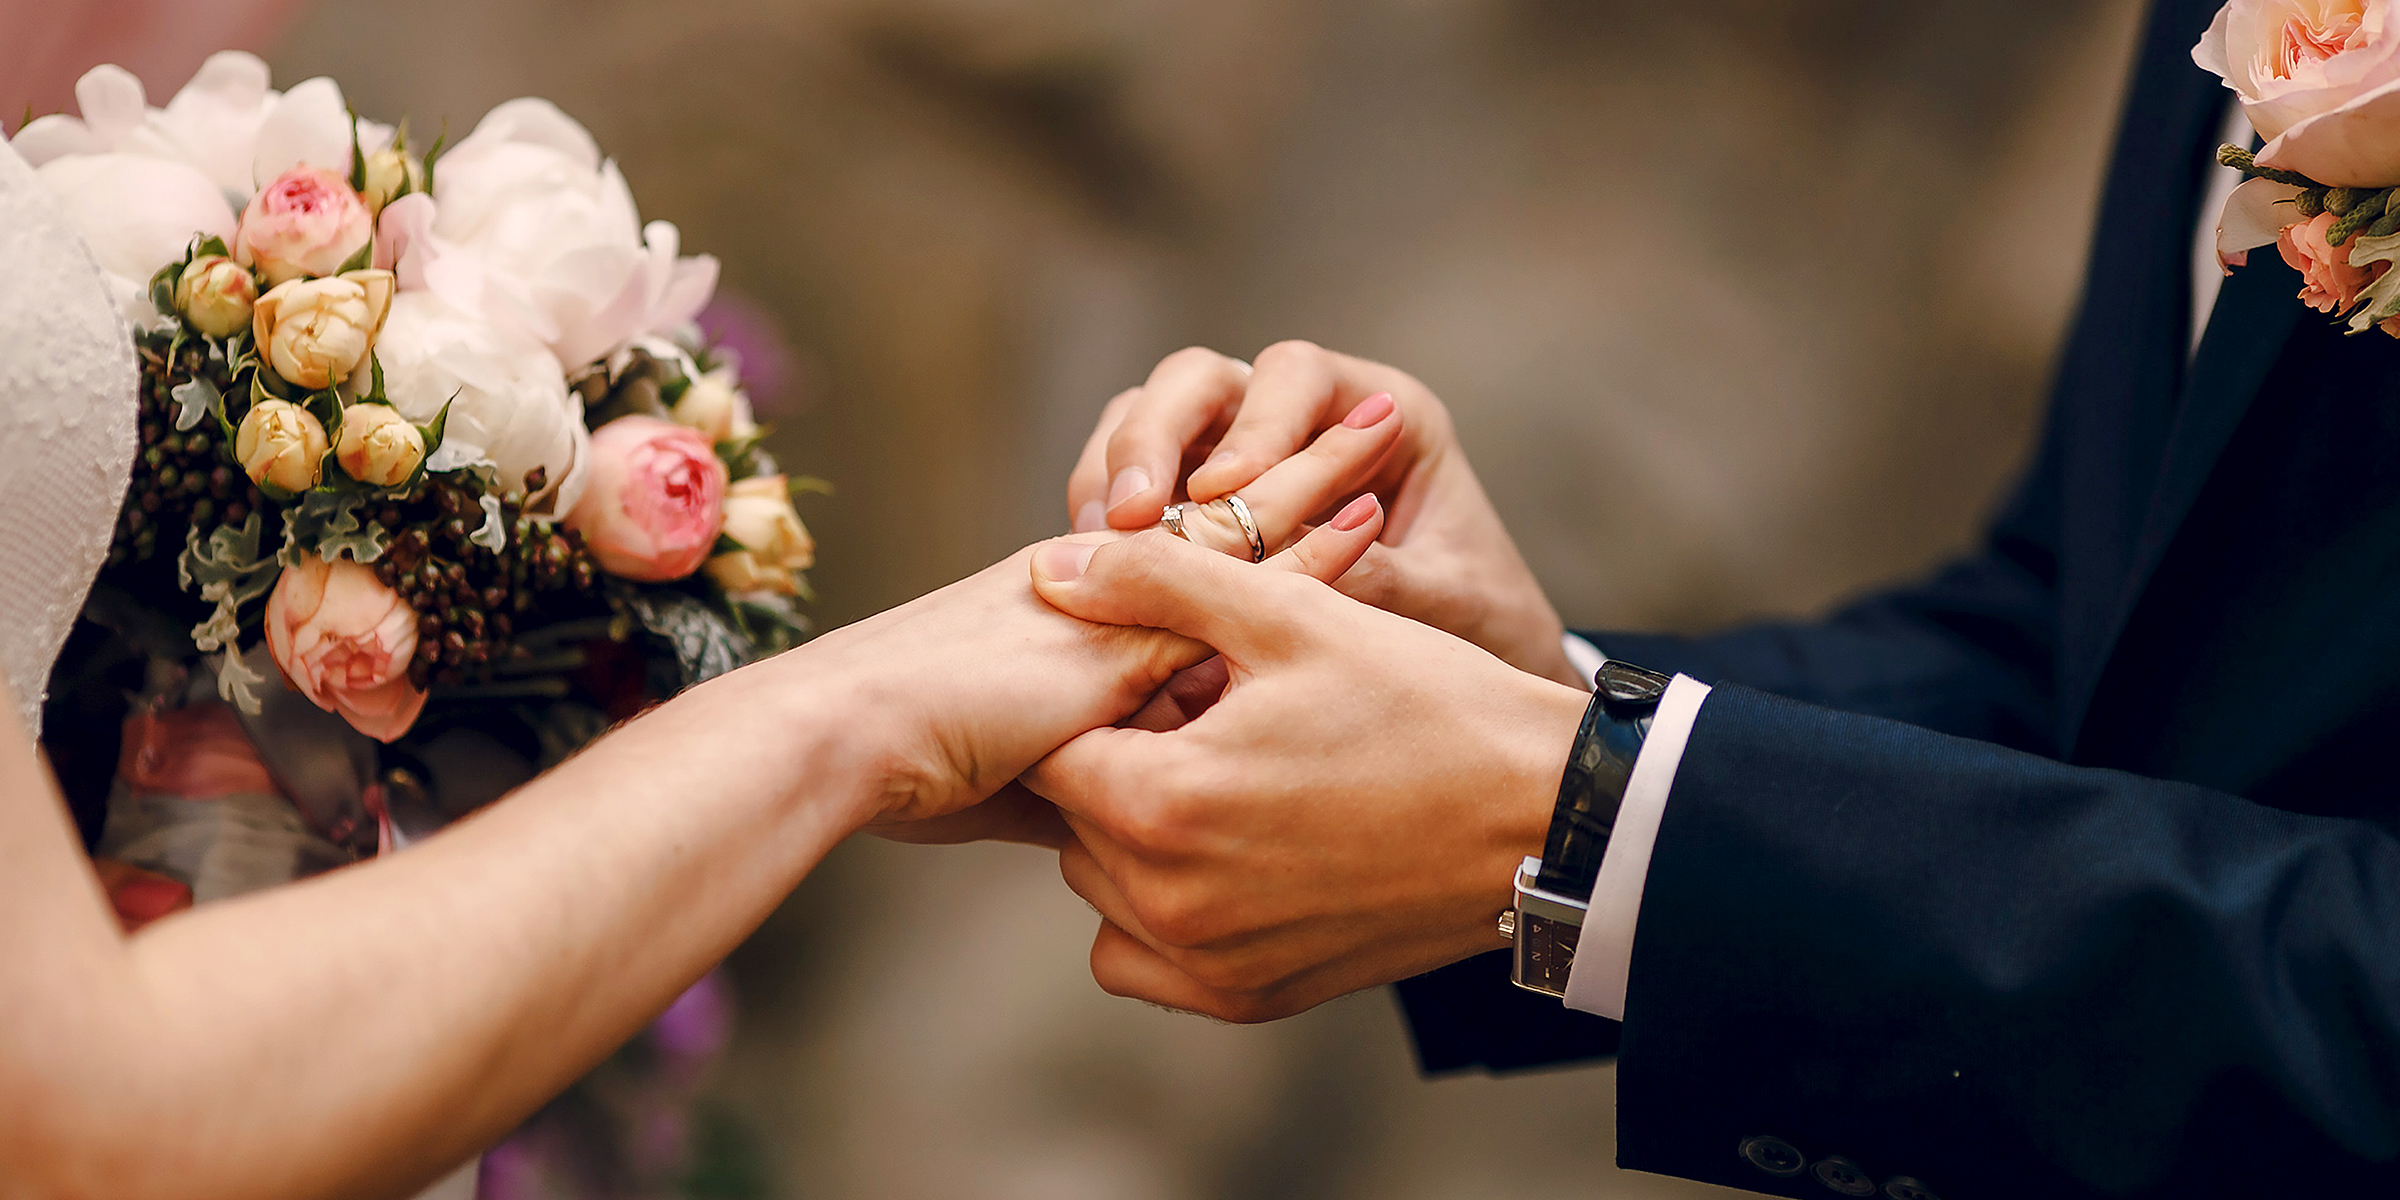 Un homme mettant une bague au doigt de sa fiancée | Source : Shutterstock